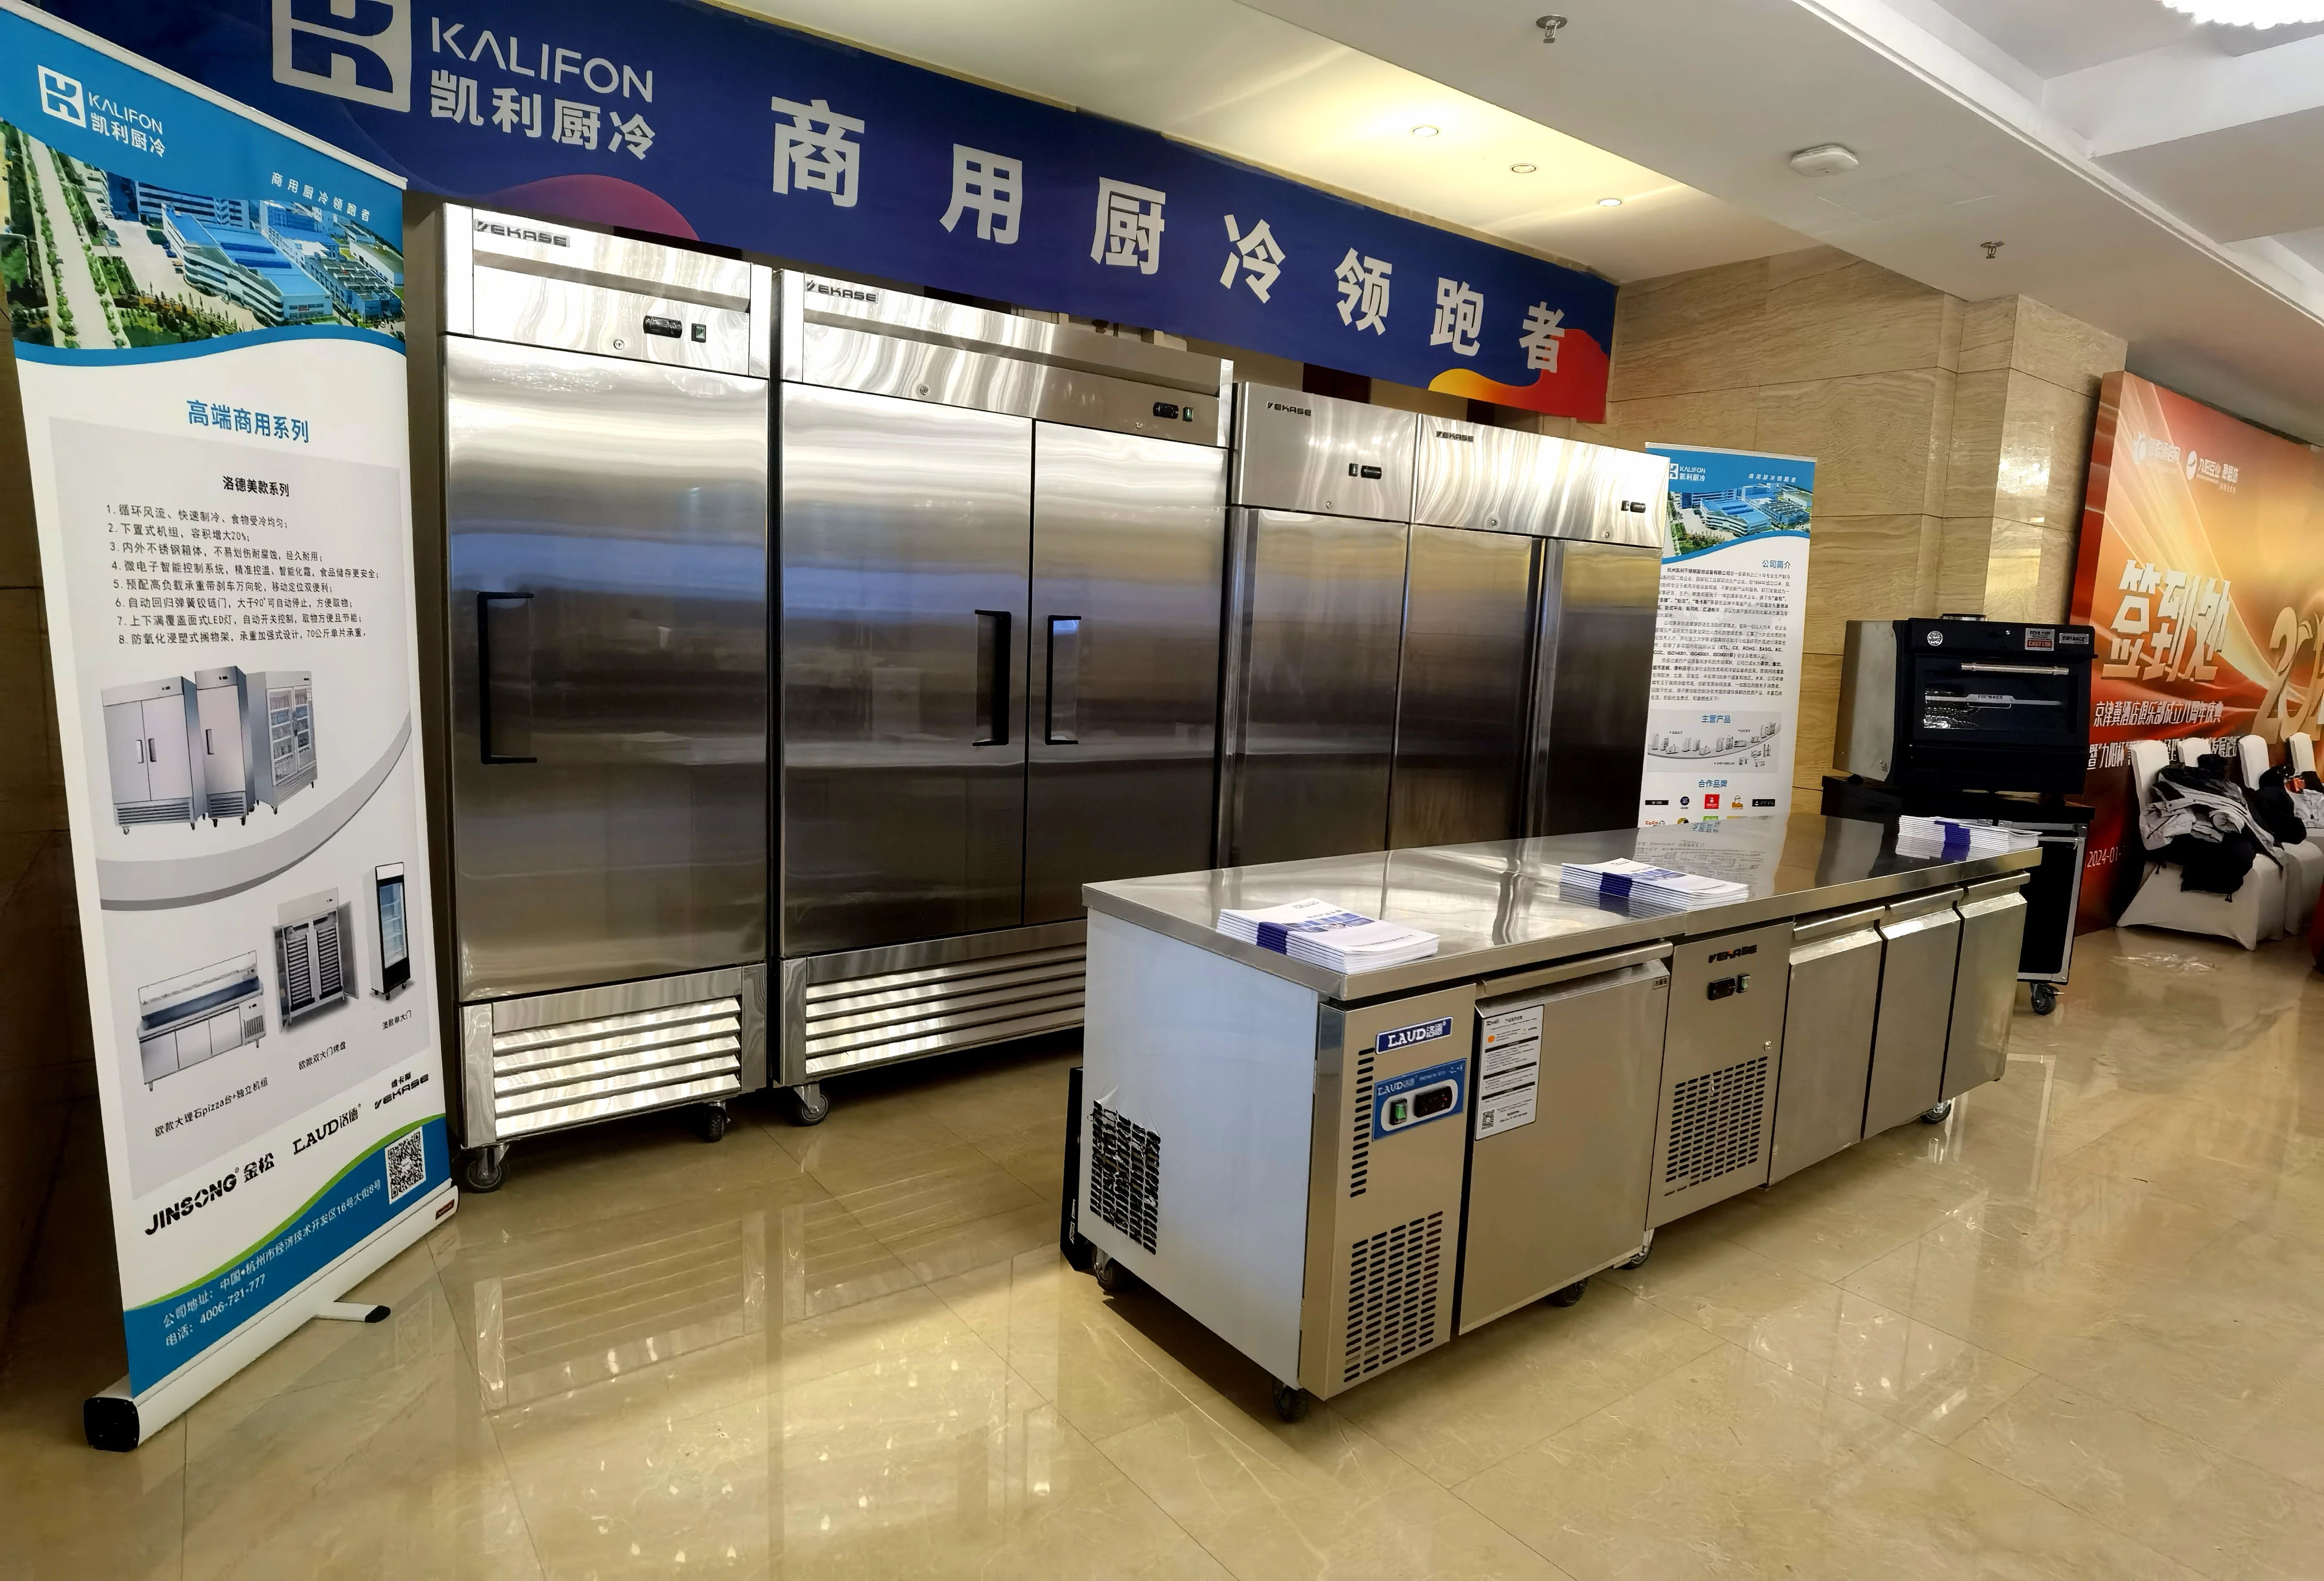 企业推荐丨杭州凯利不锈钢厨房设备有限公司